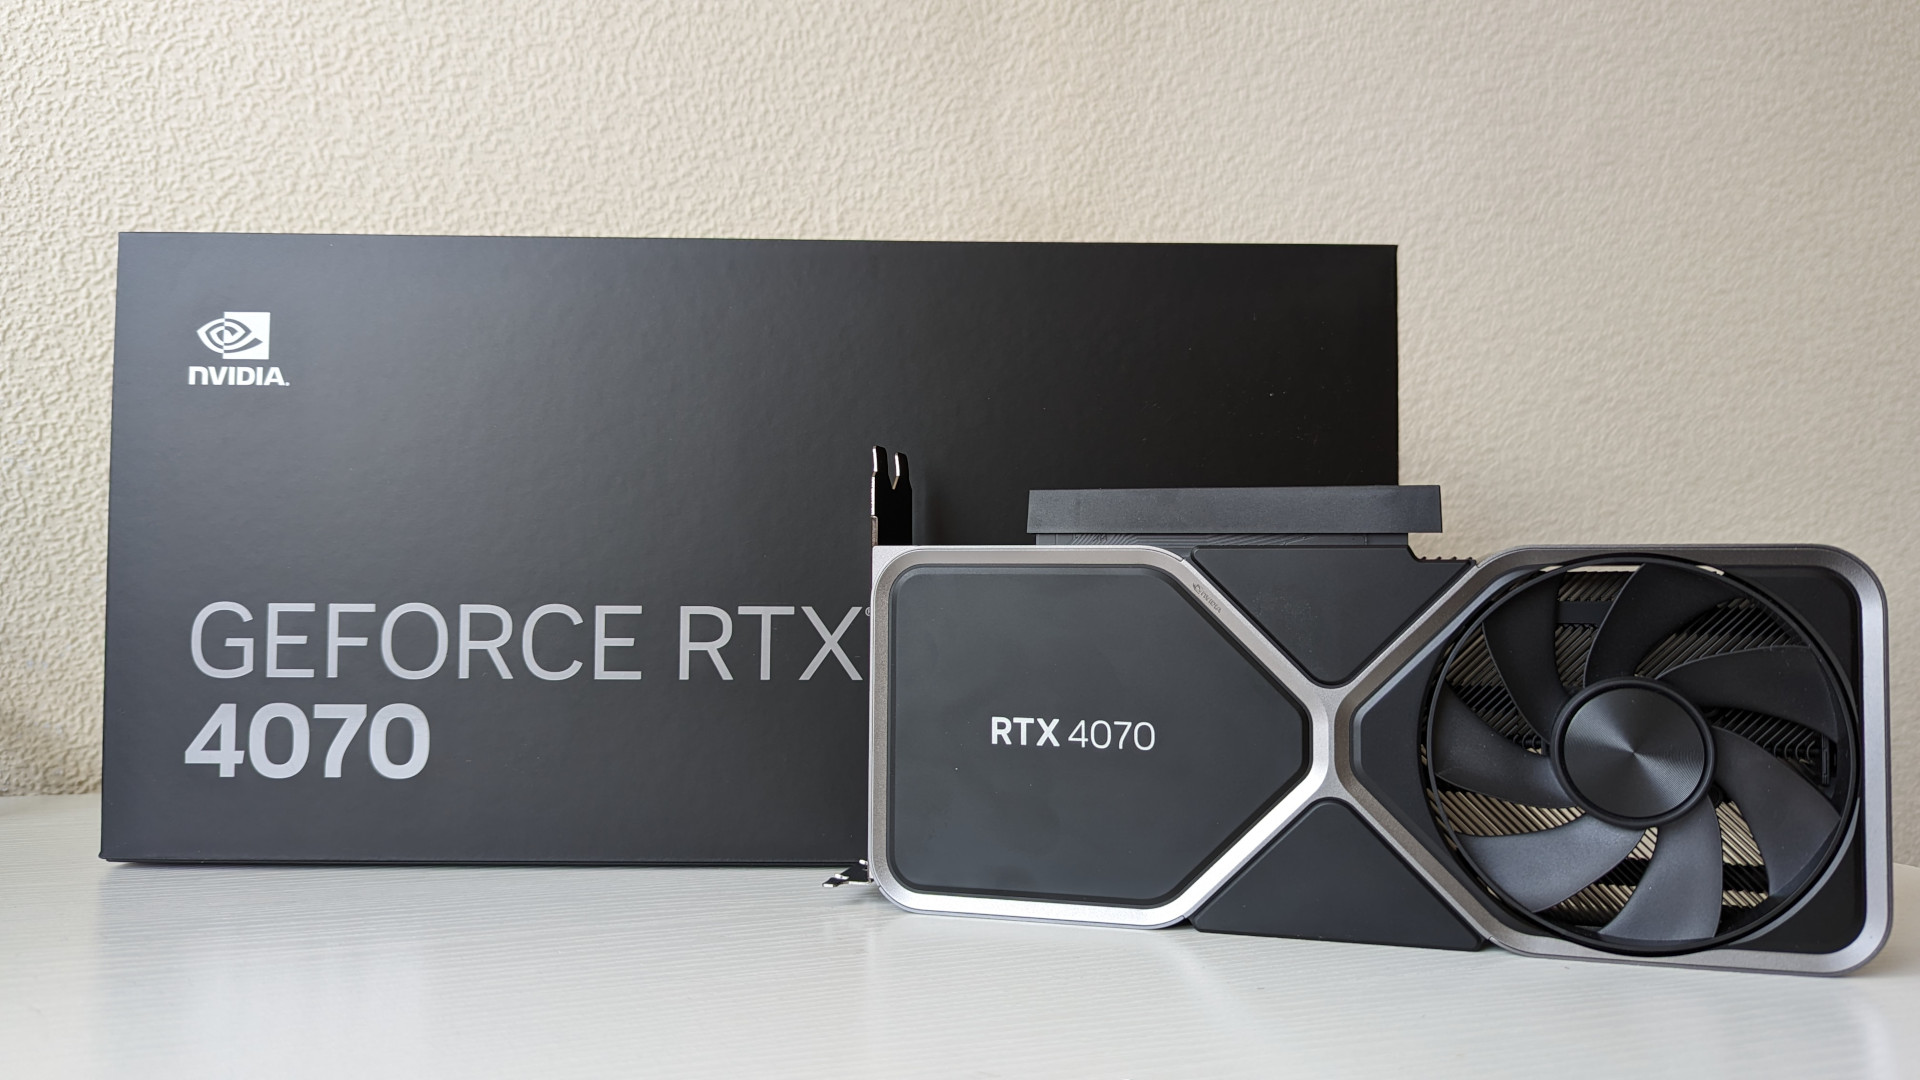 Nvidia Geforce RTX 4070 Review: Kertu Pendhudhuk Edisi Edisi sing ana gandhengane karo kemasan eceran